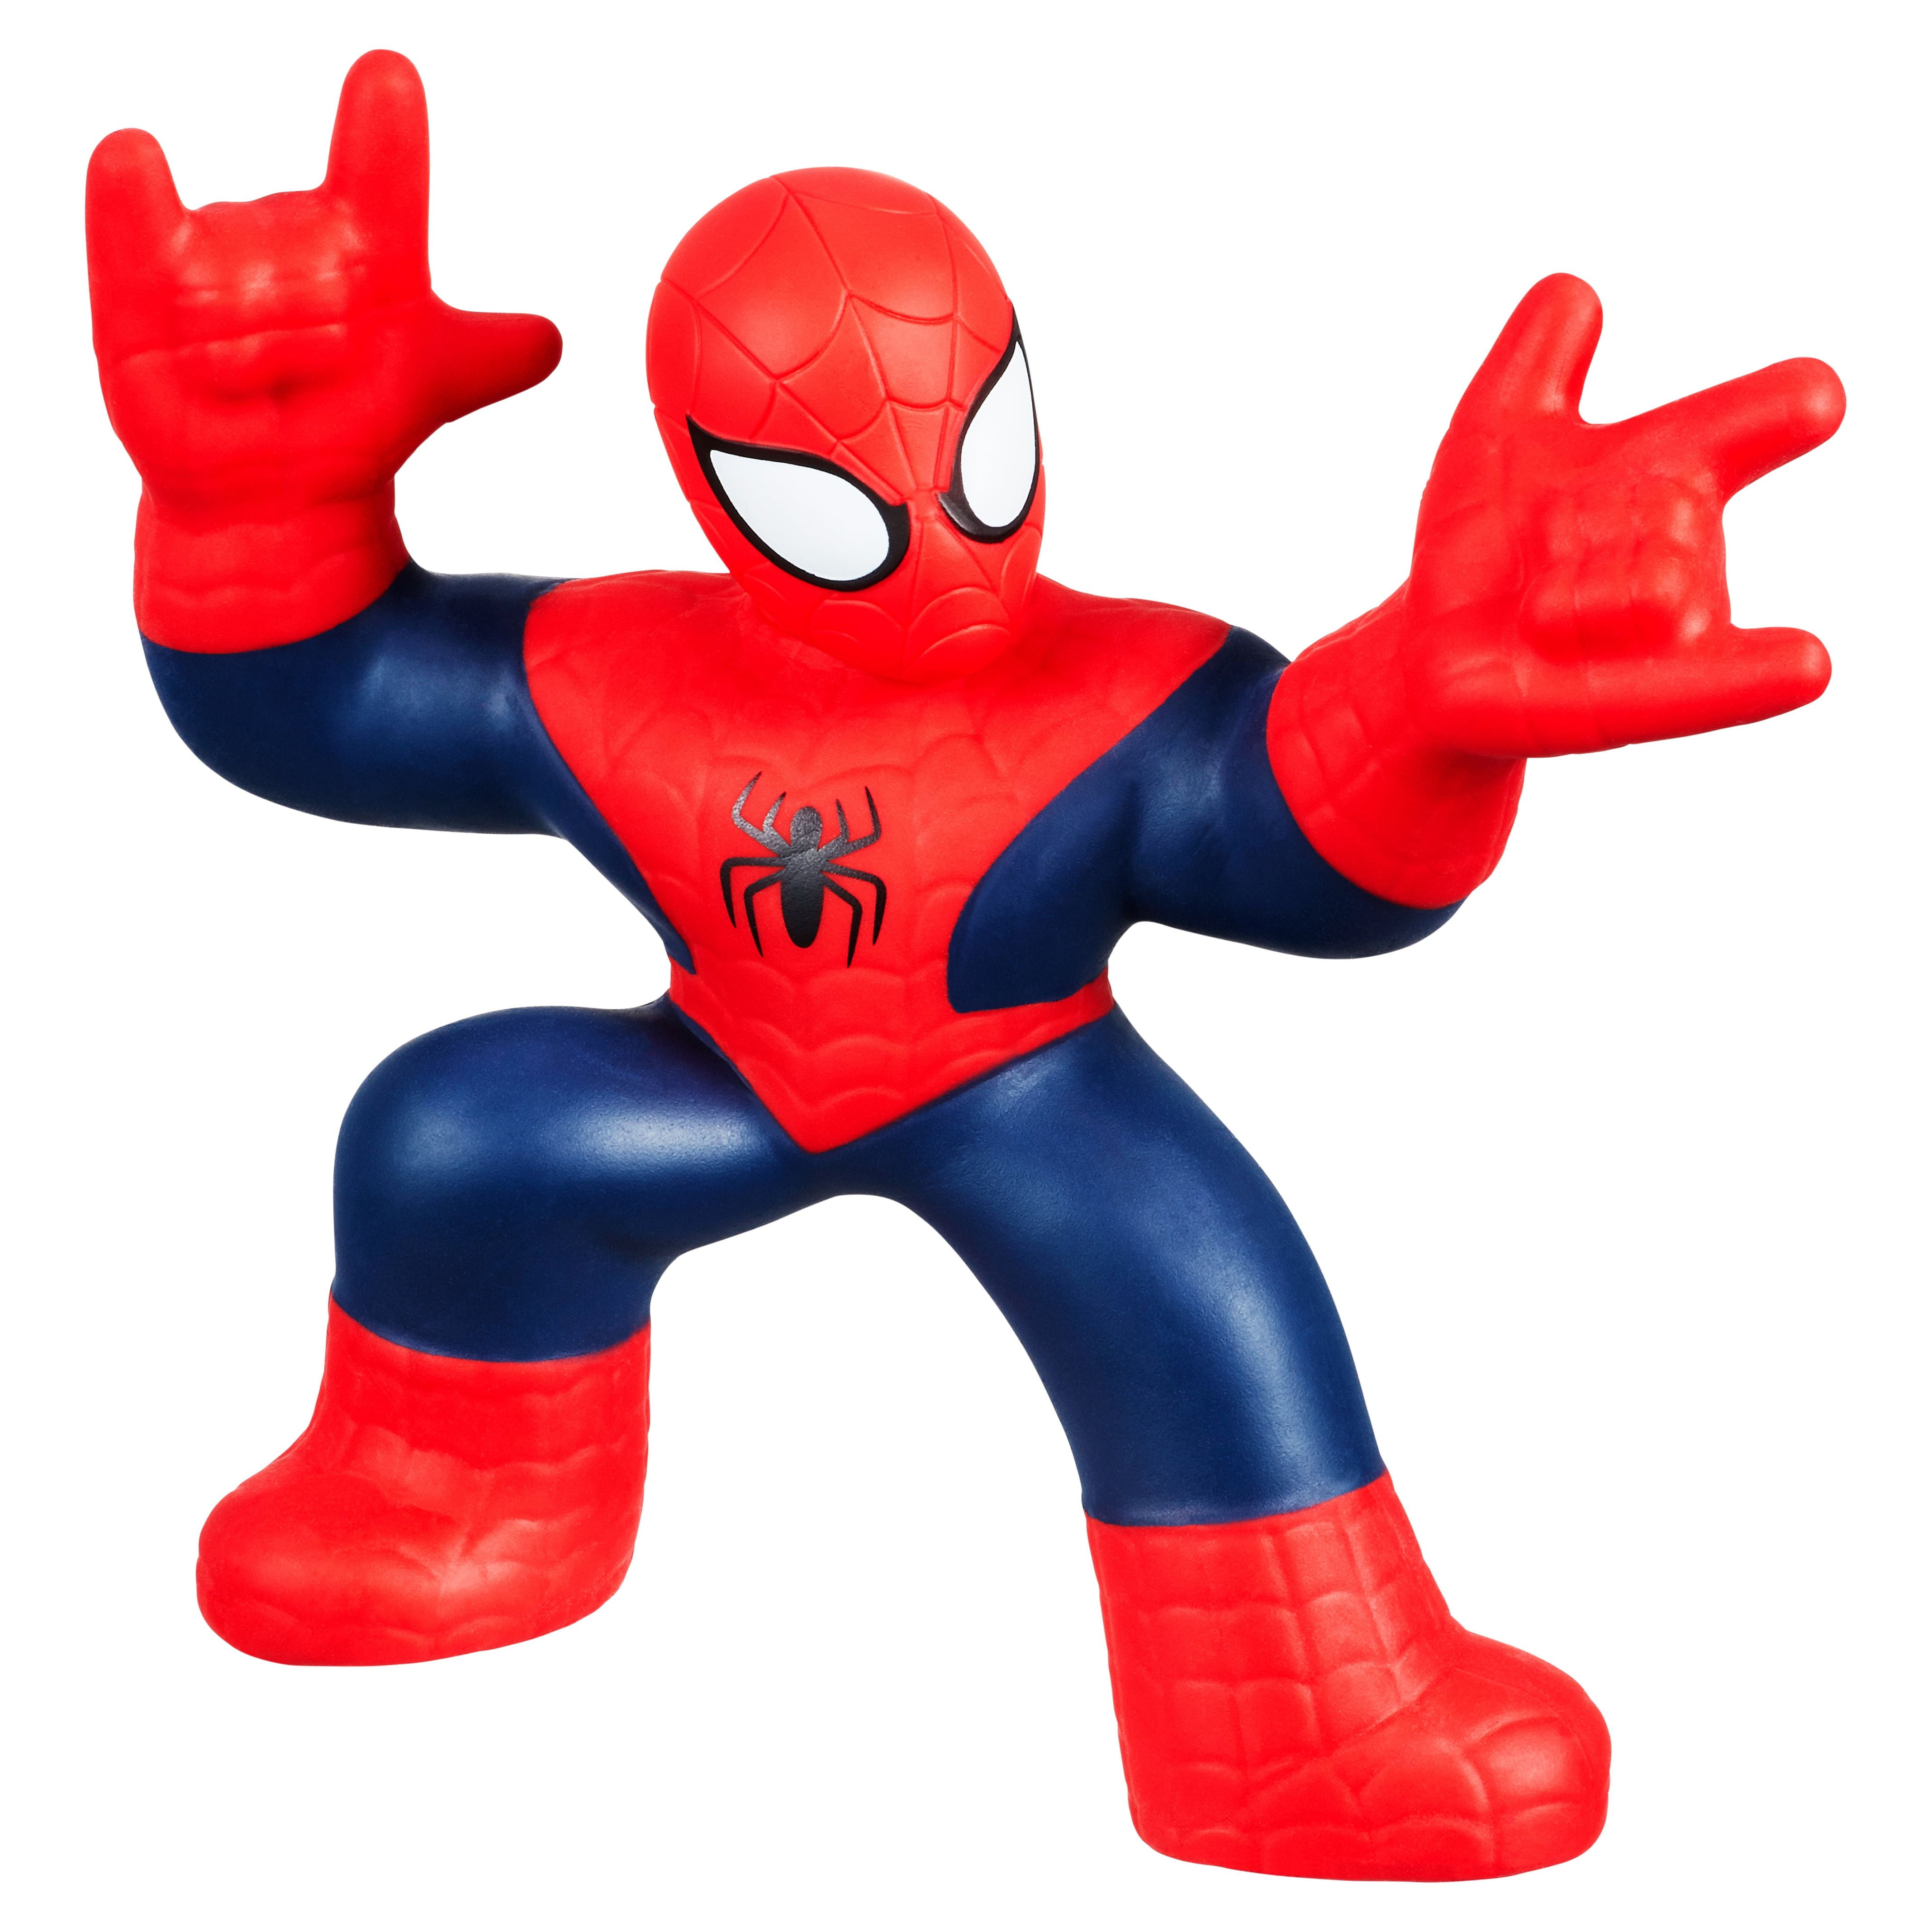 Marvel Heroes Goo Jit Zu Spiderman Figure, 1 ct - Foods Co.